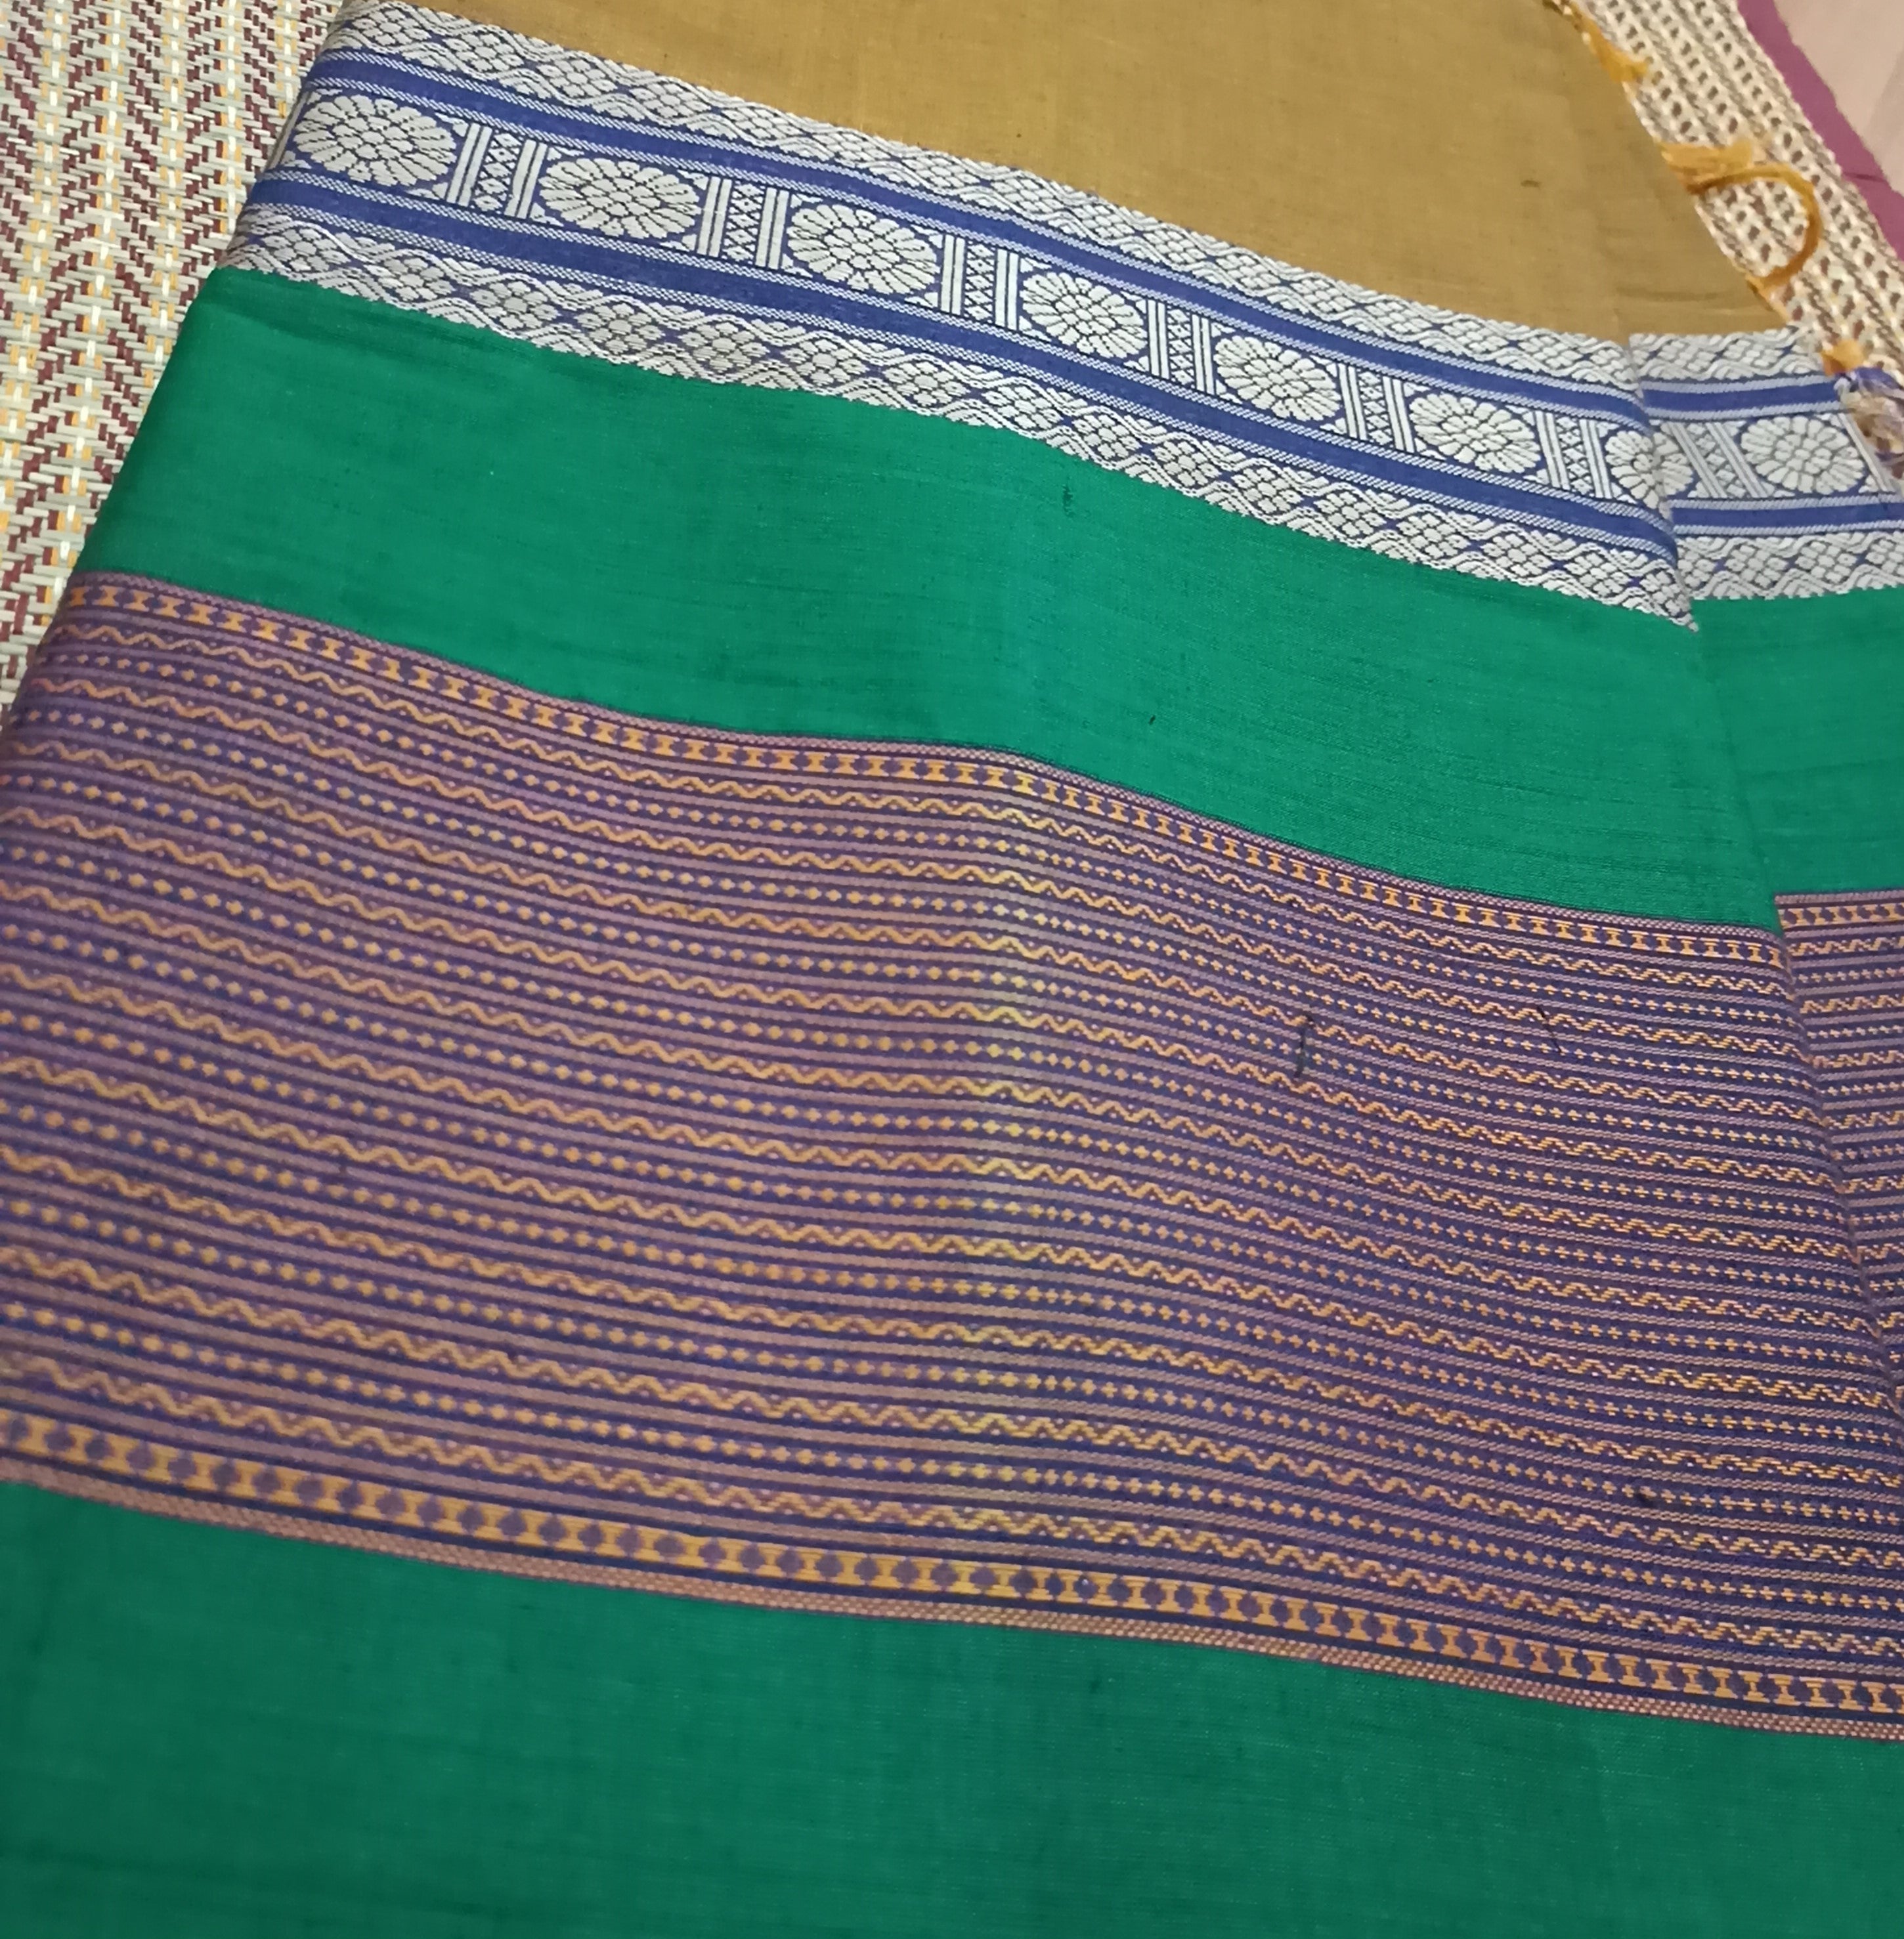 Intricately designed saree - umbara designs saree blouse combo